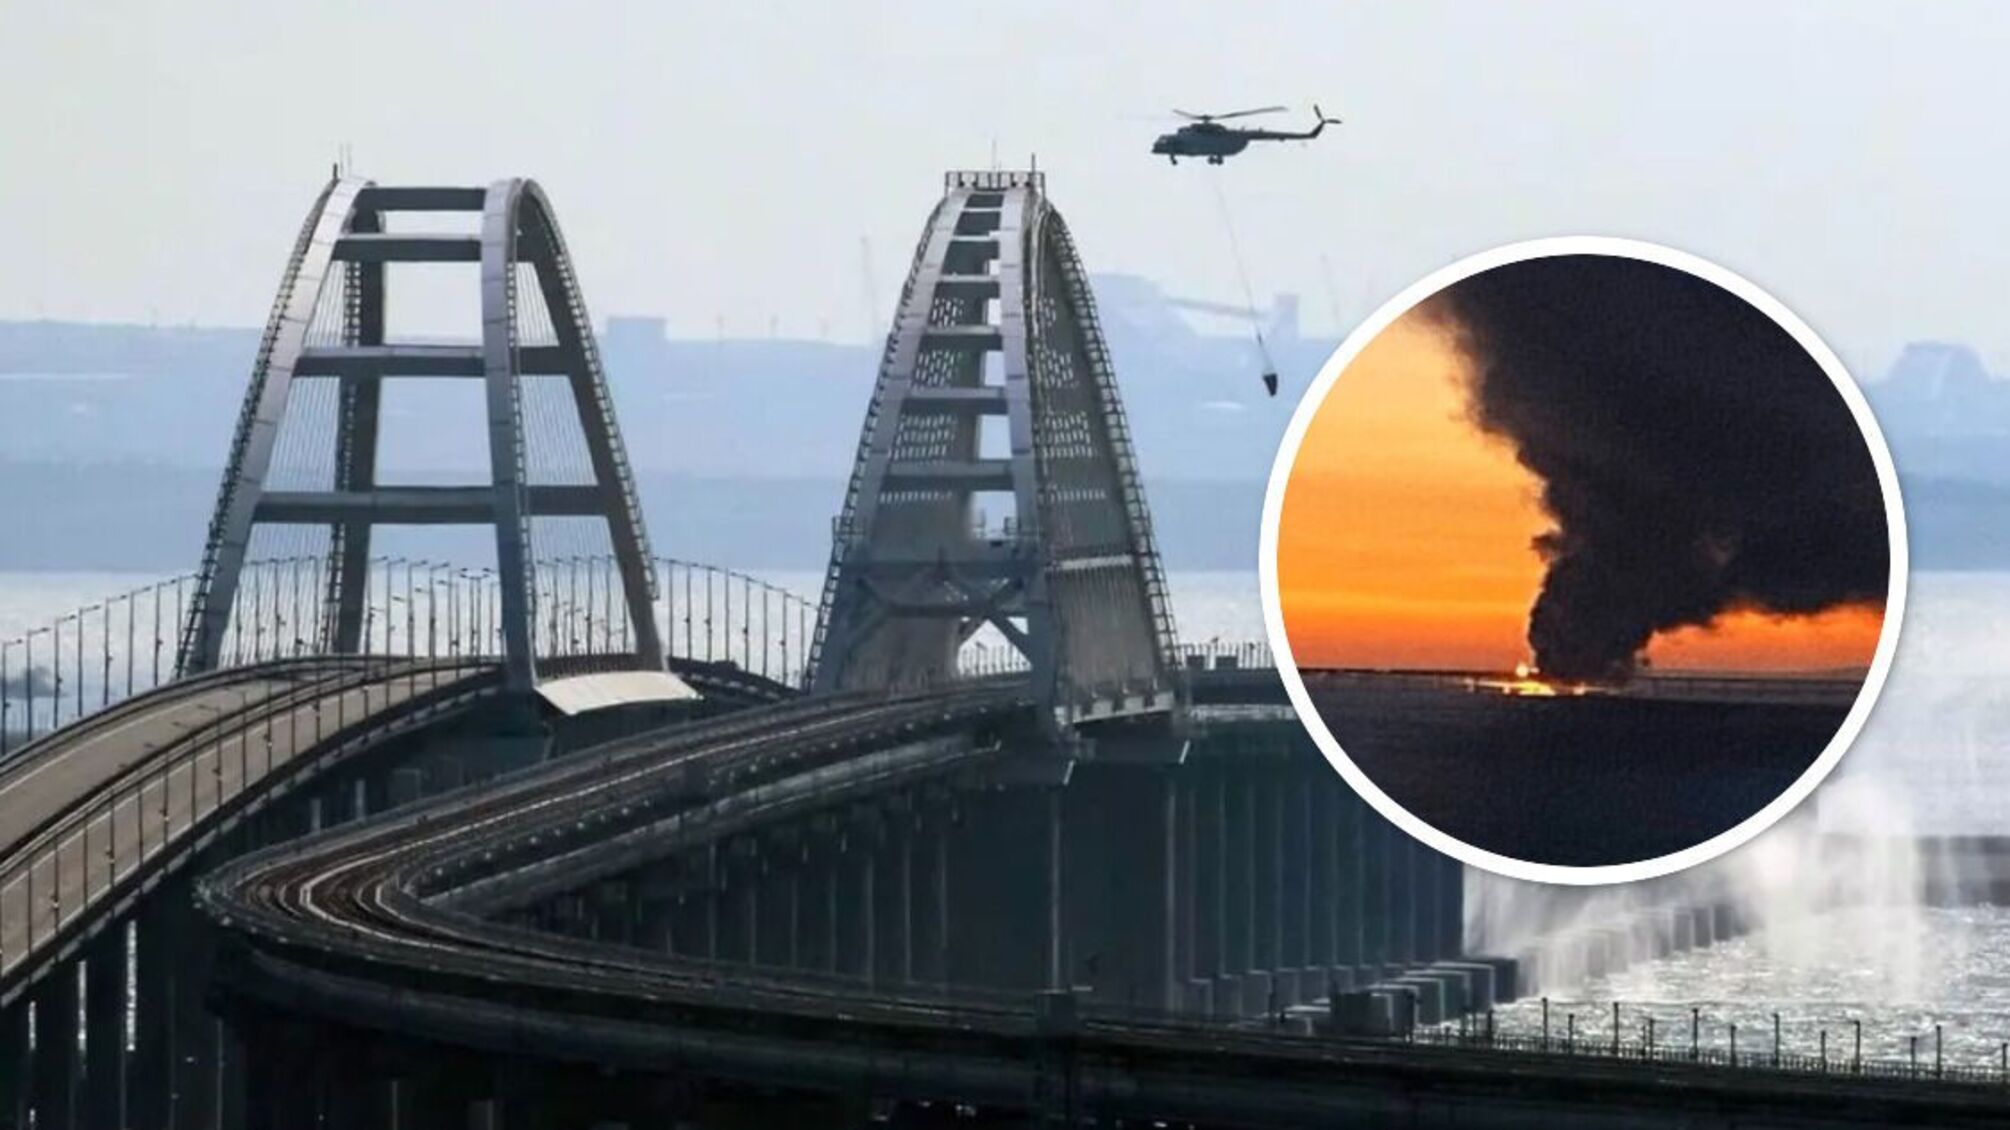 Фото Крымского моста с неожиданного ракурса - вид снизу: заметно, что он построен кое-как